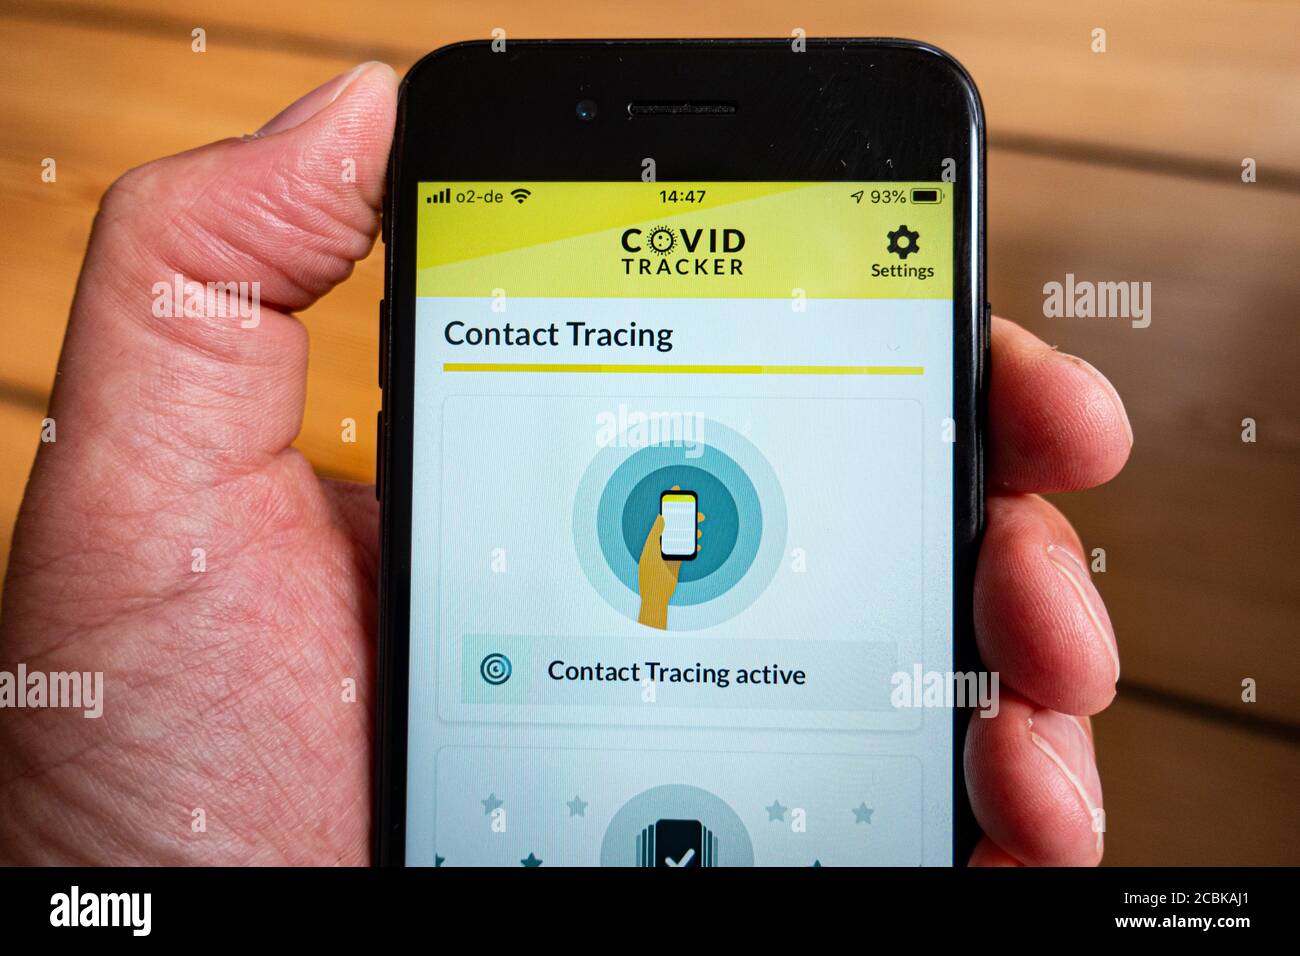 Détail de l'application Covid Tracker produite par le gouvernement de l'Irlande sur un écran de smartphone Banque D'Images